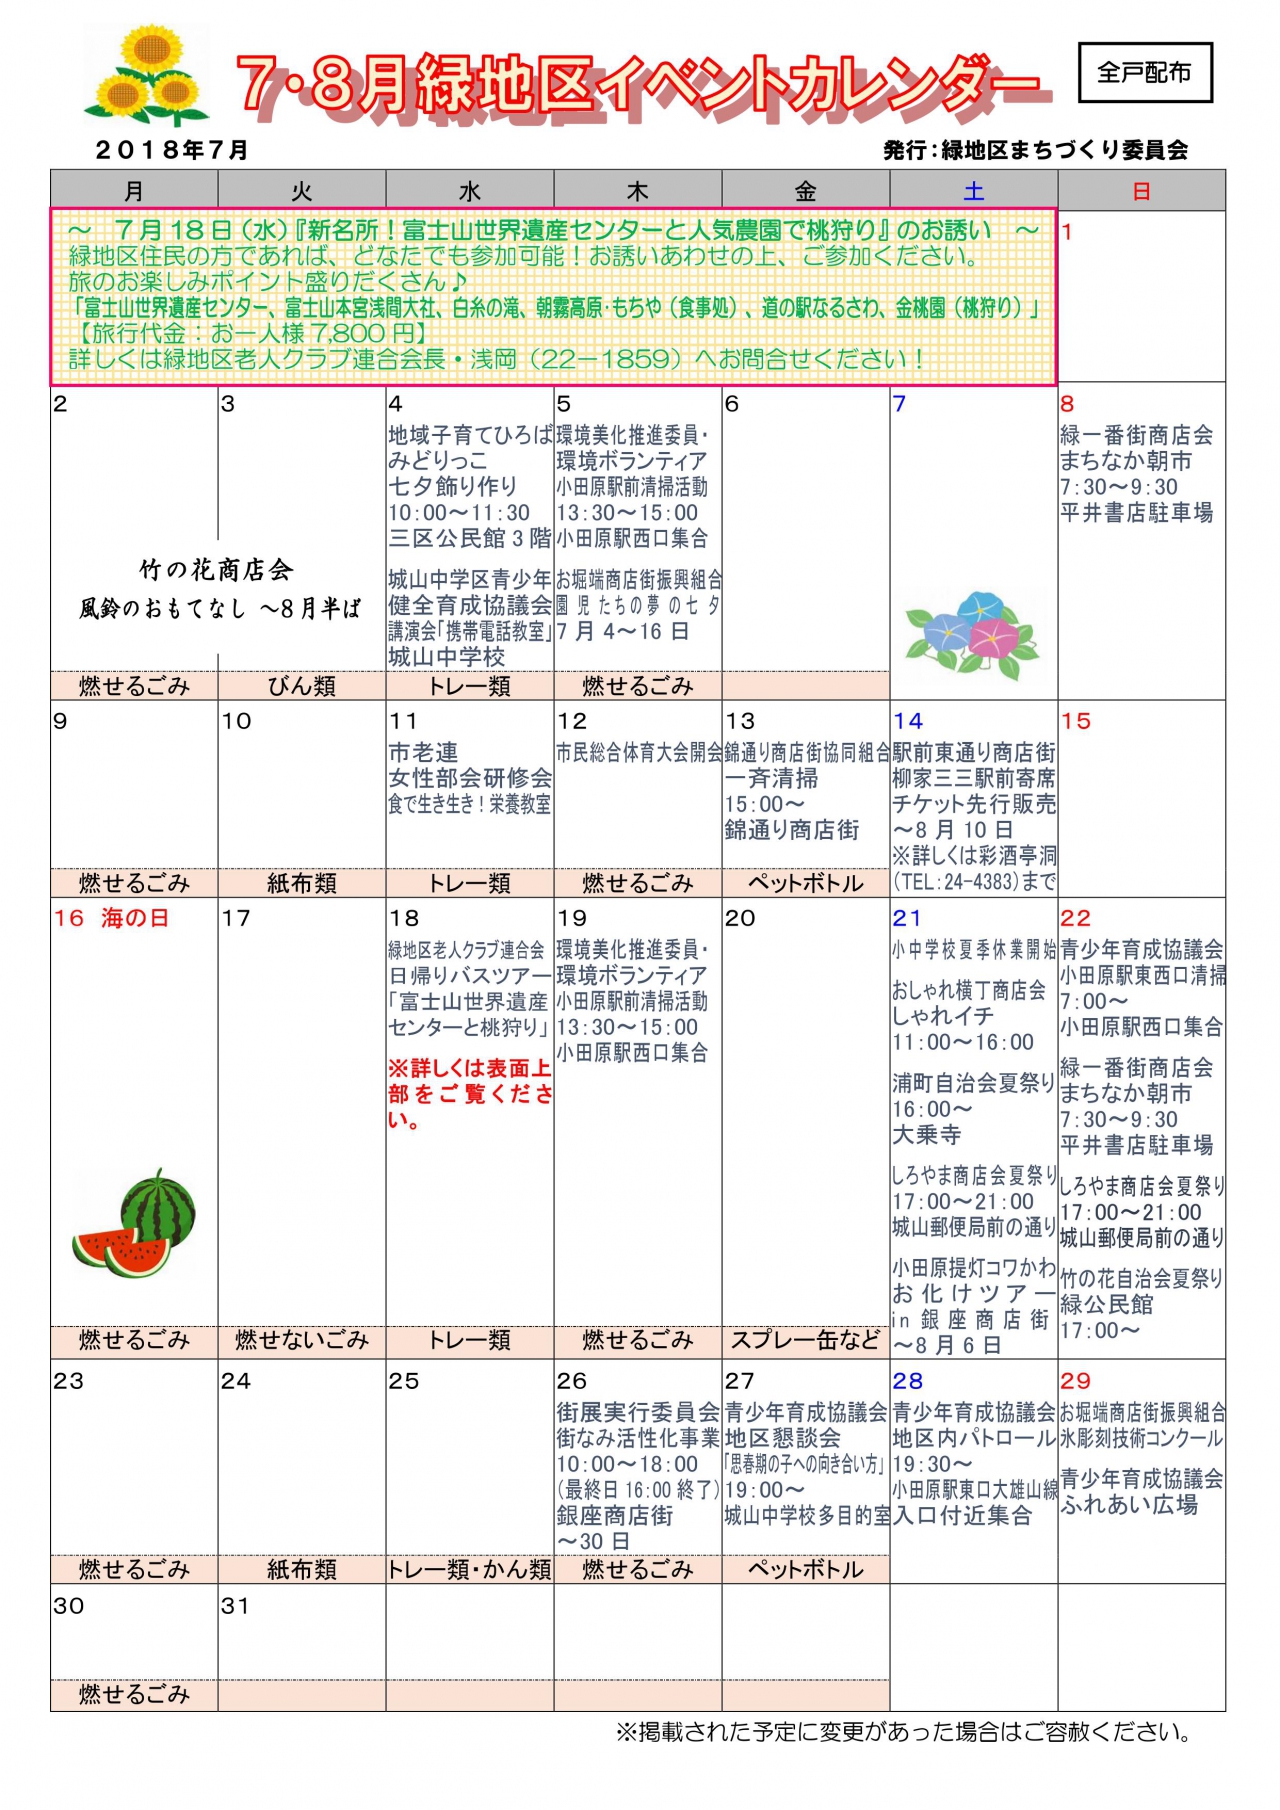 緑地区イベントカレンダー 7月8月発行 各自治会からのお知らせ 小田原自治会総連合